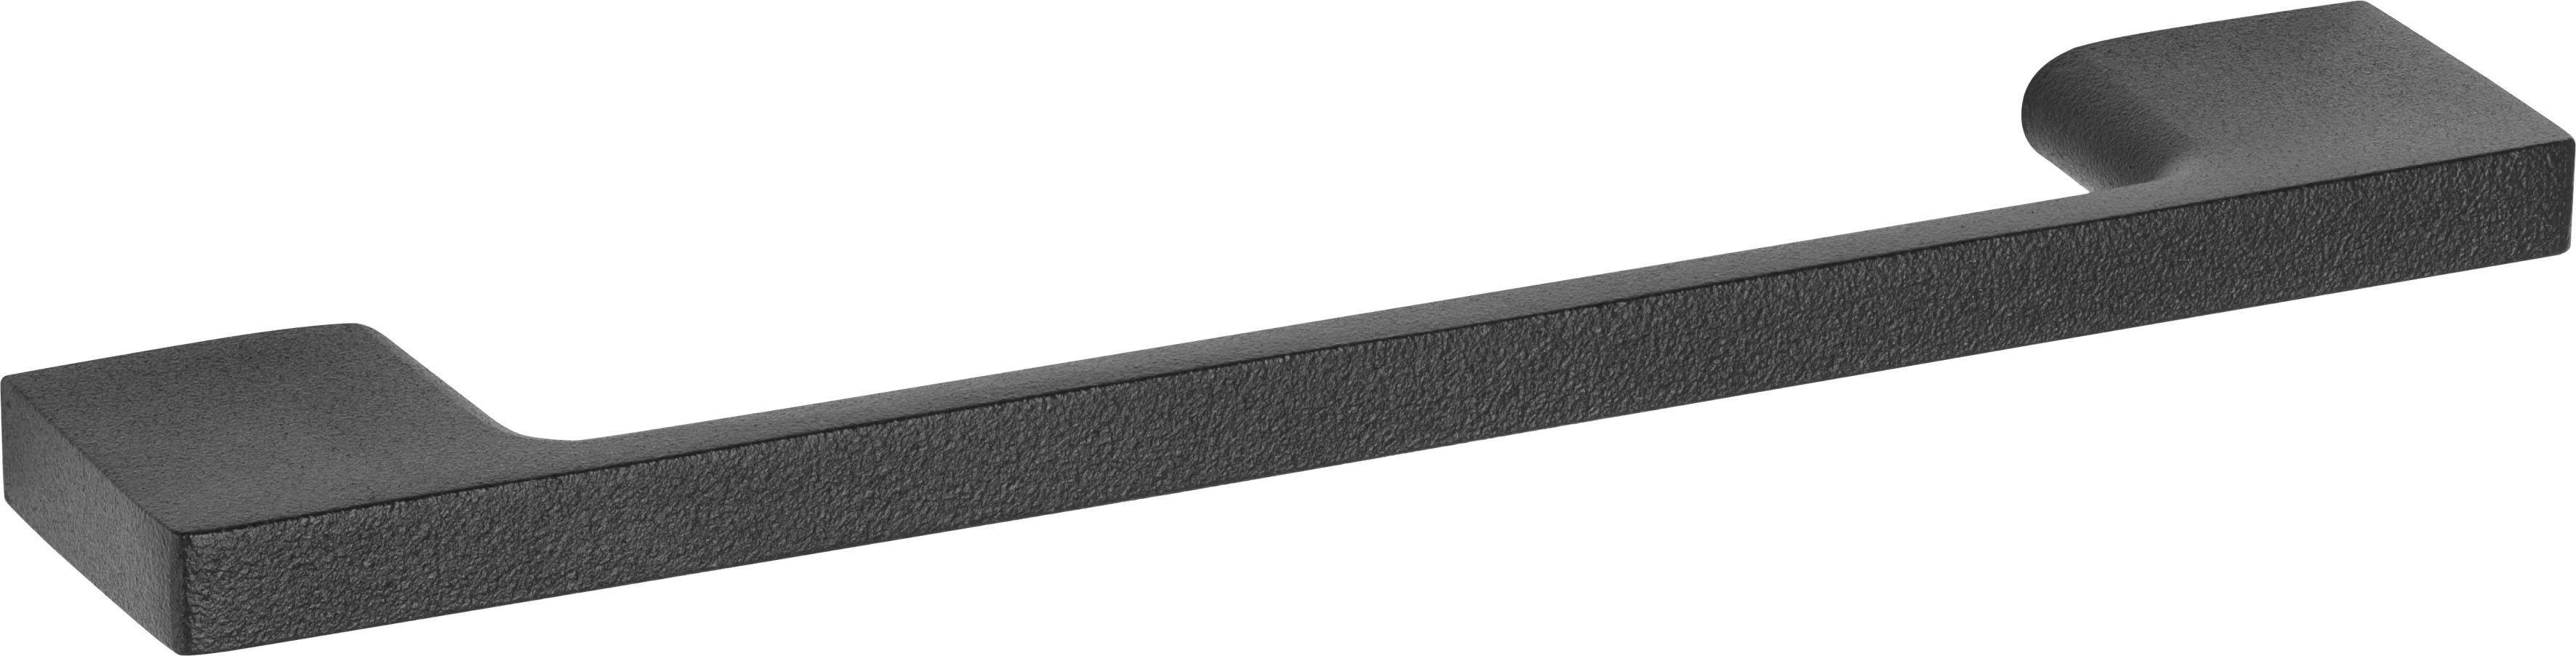 OPTIFIT Backofen/Kühlumbauschrank Tokio 188 cm viel Stauraum breit, mit wildeichefarben Stahlgestell, | wildeichefarben-granit mit schwarz